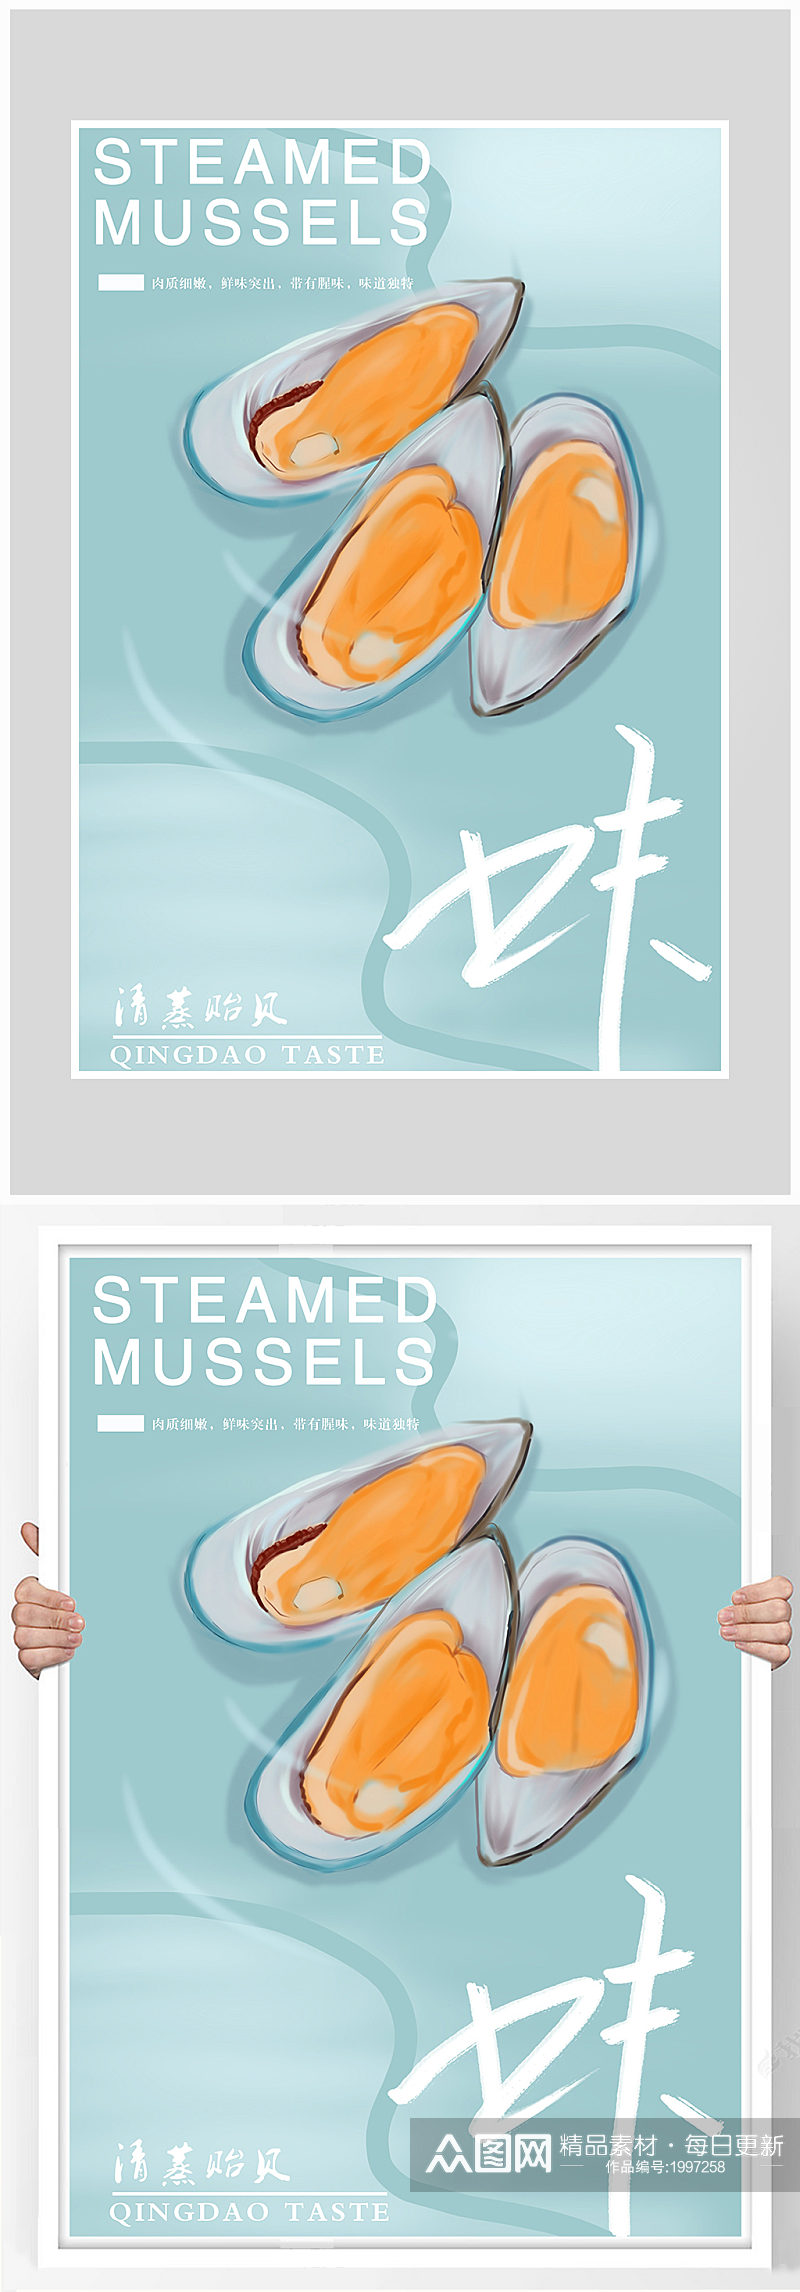 创意质感清新海鲜蛤蜊海报设计素材